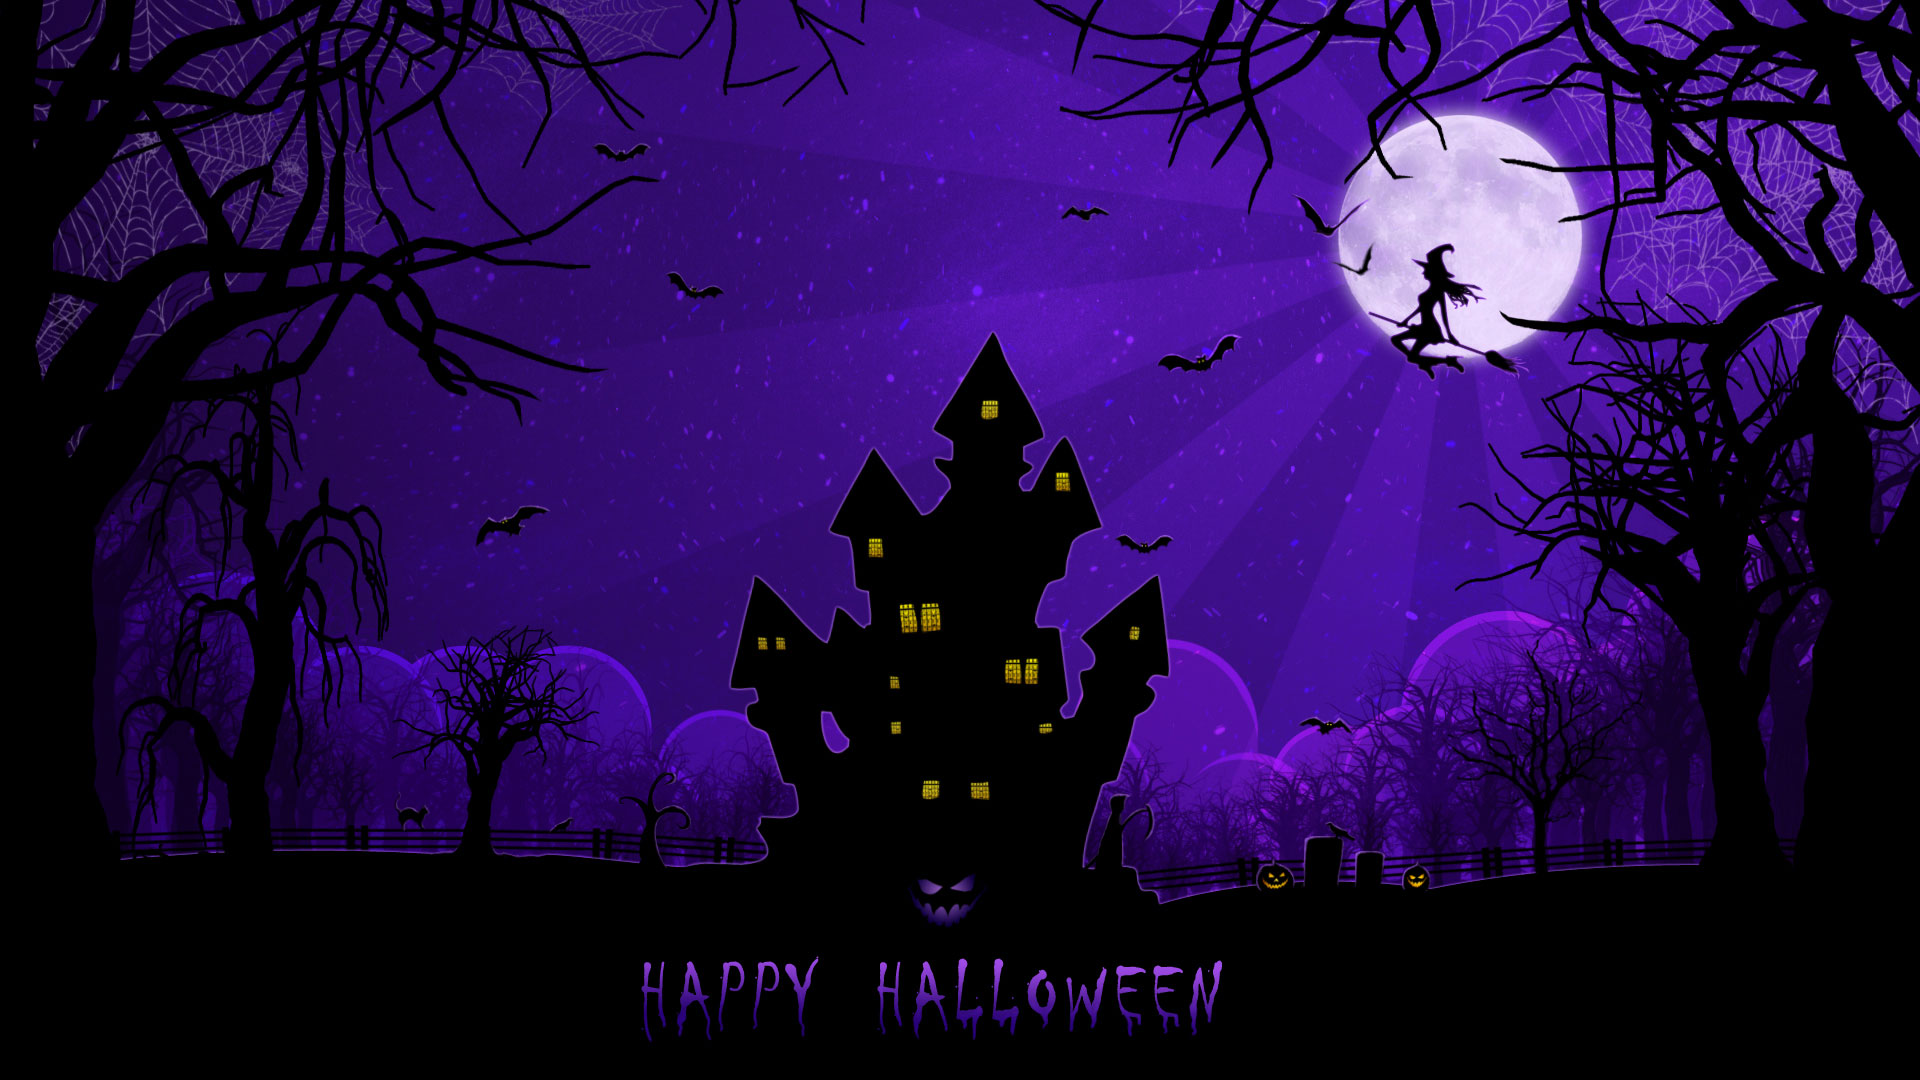 Free download Halloween Desktop Backgrounds 